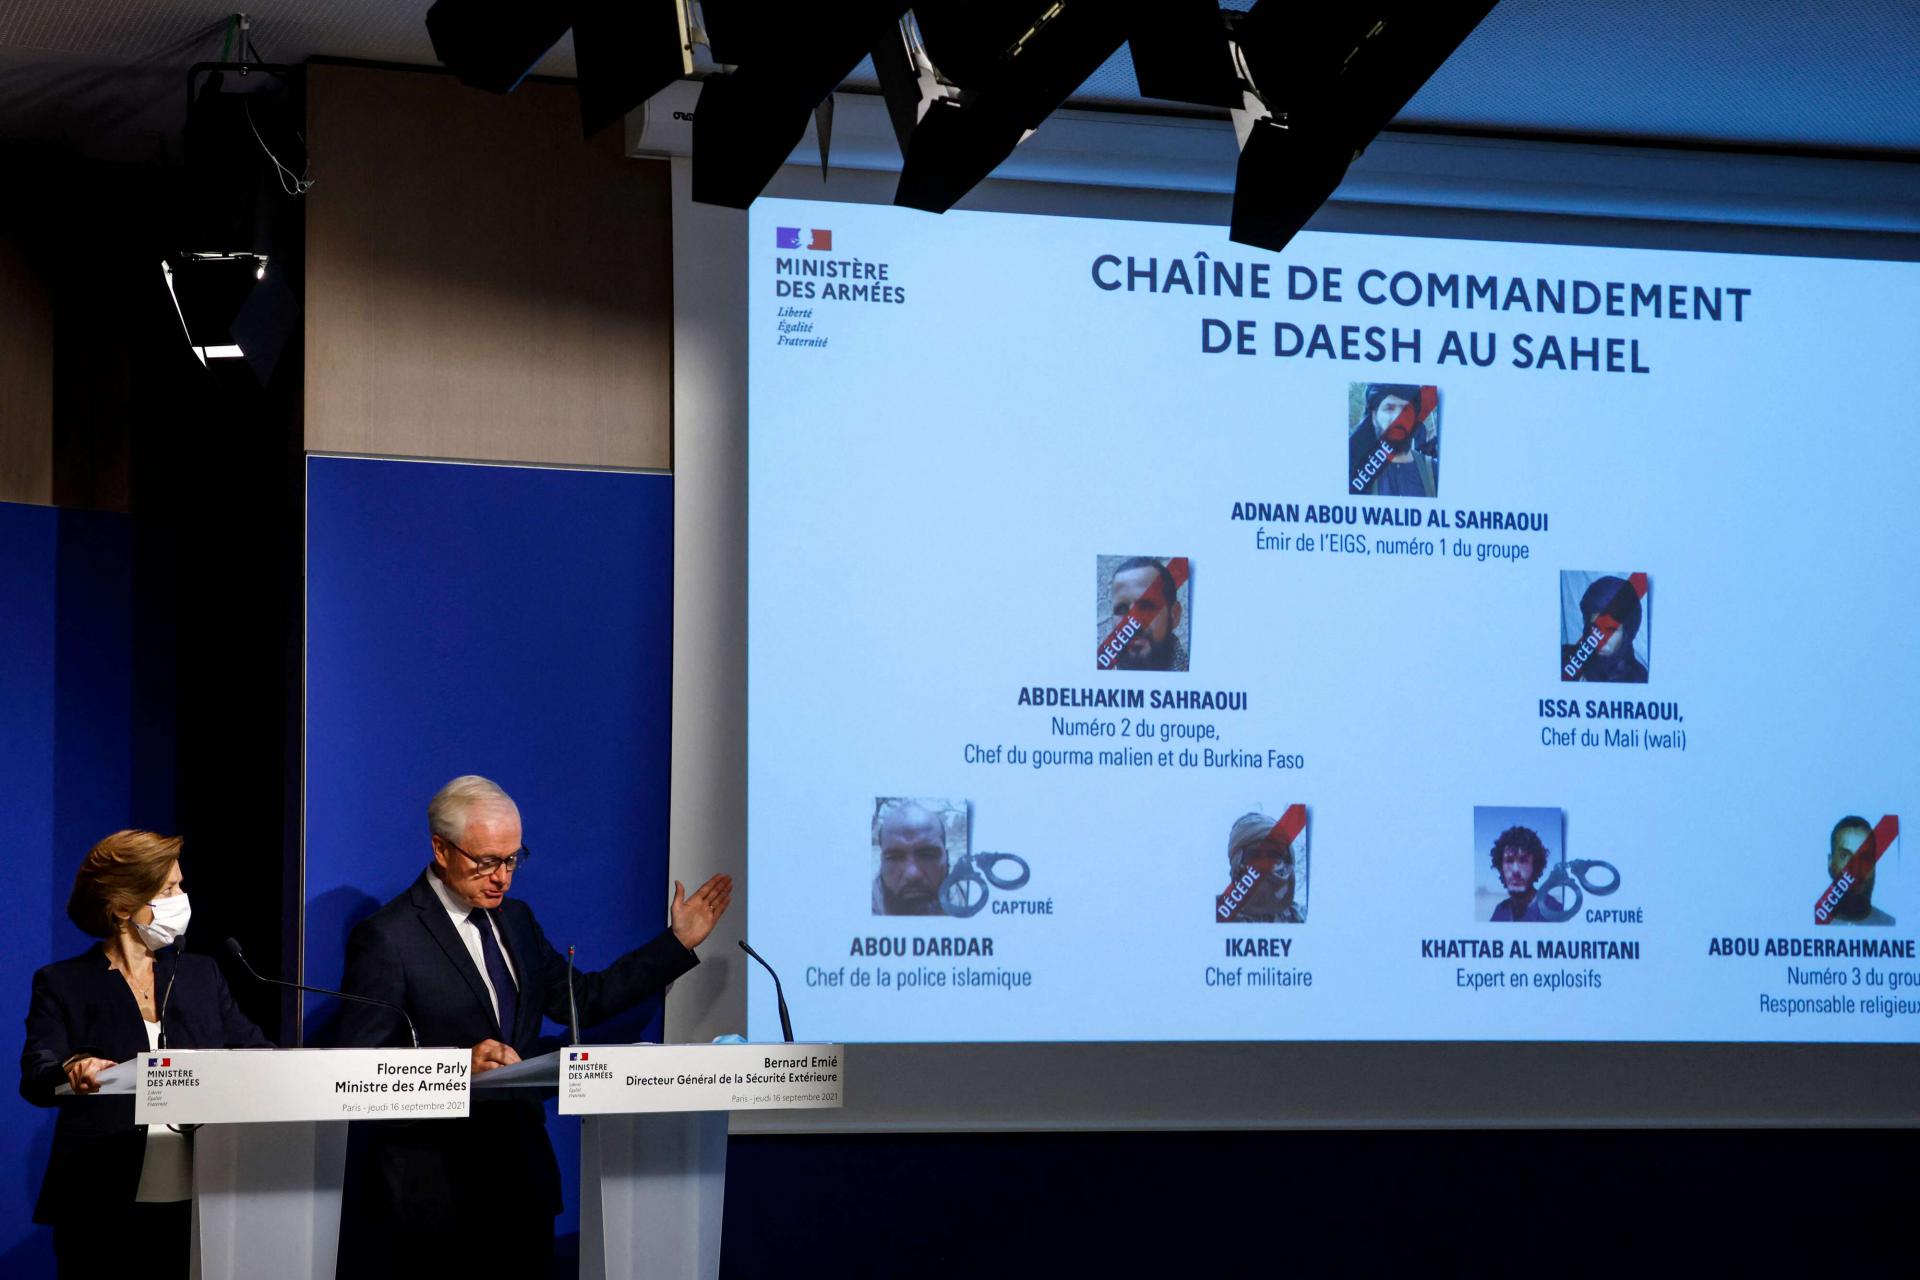 فرنسا تعلن مقتل خمسة من كبار قادة داعش في الصحراء الكبرى بينهم الصحراوي المطلوب أميركيا